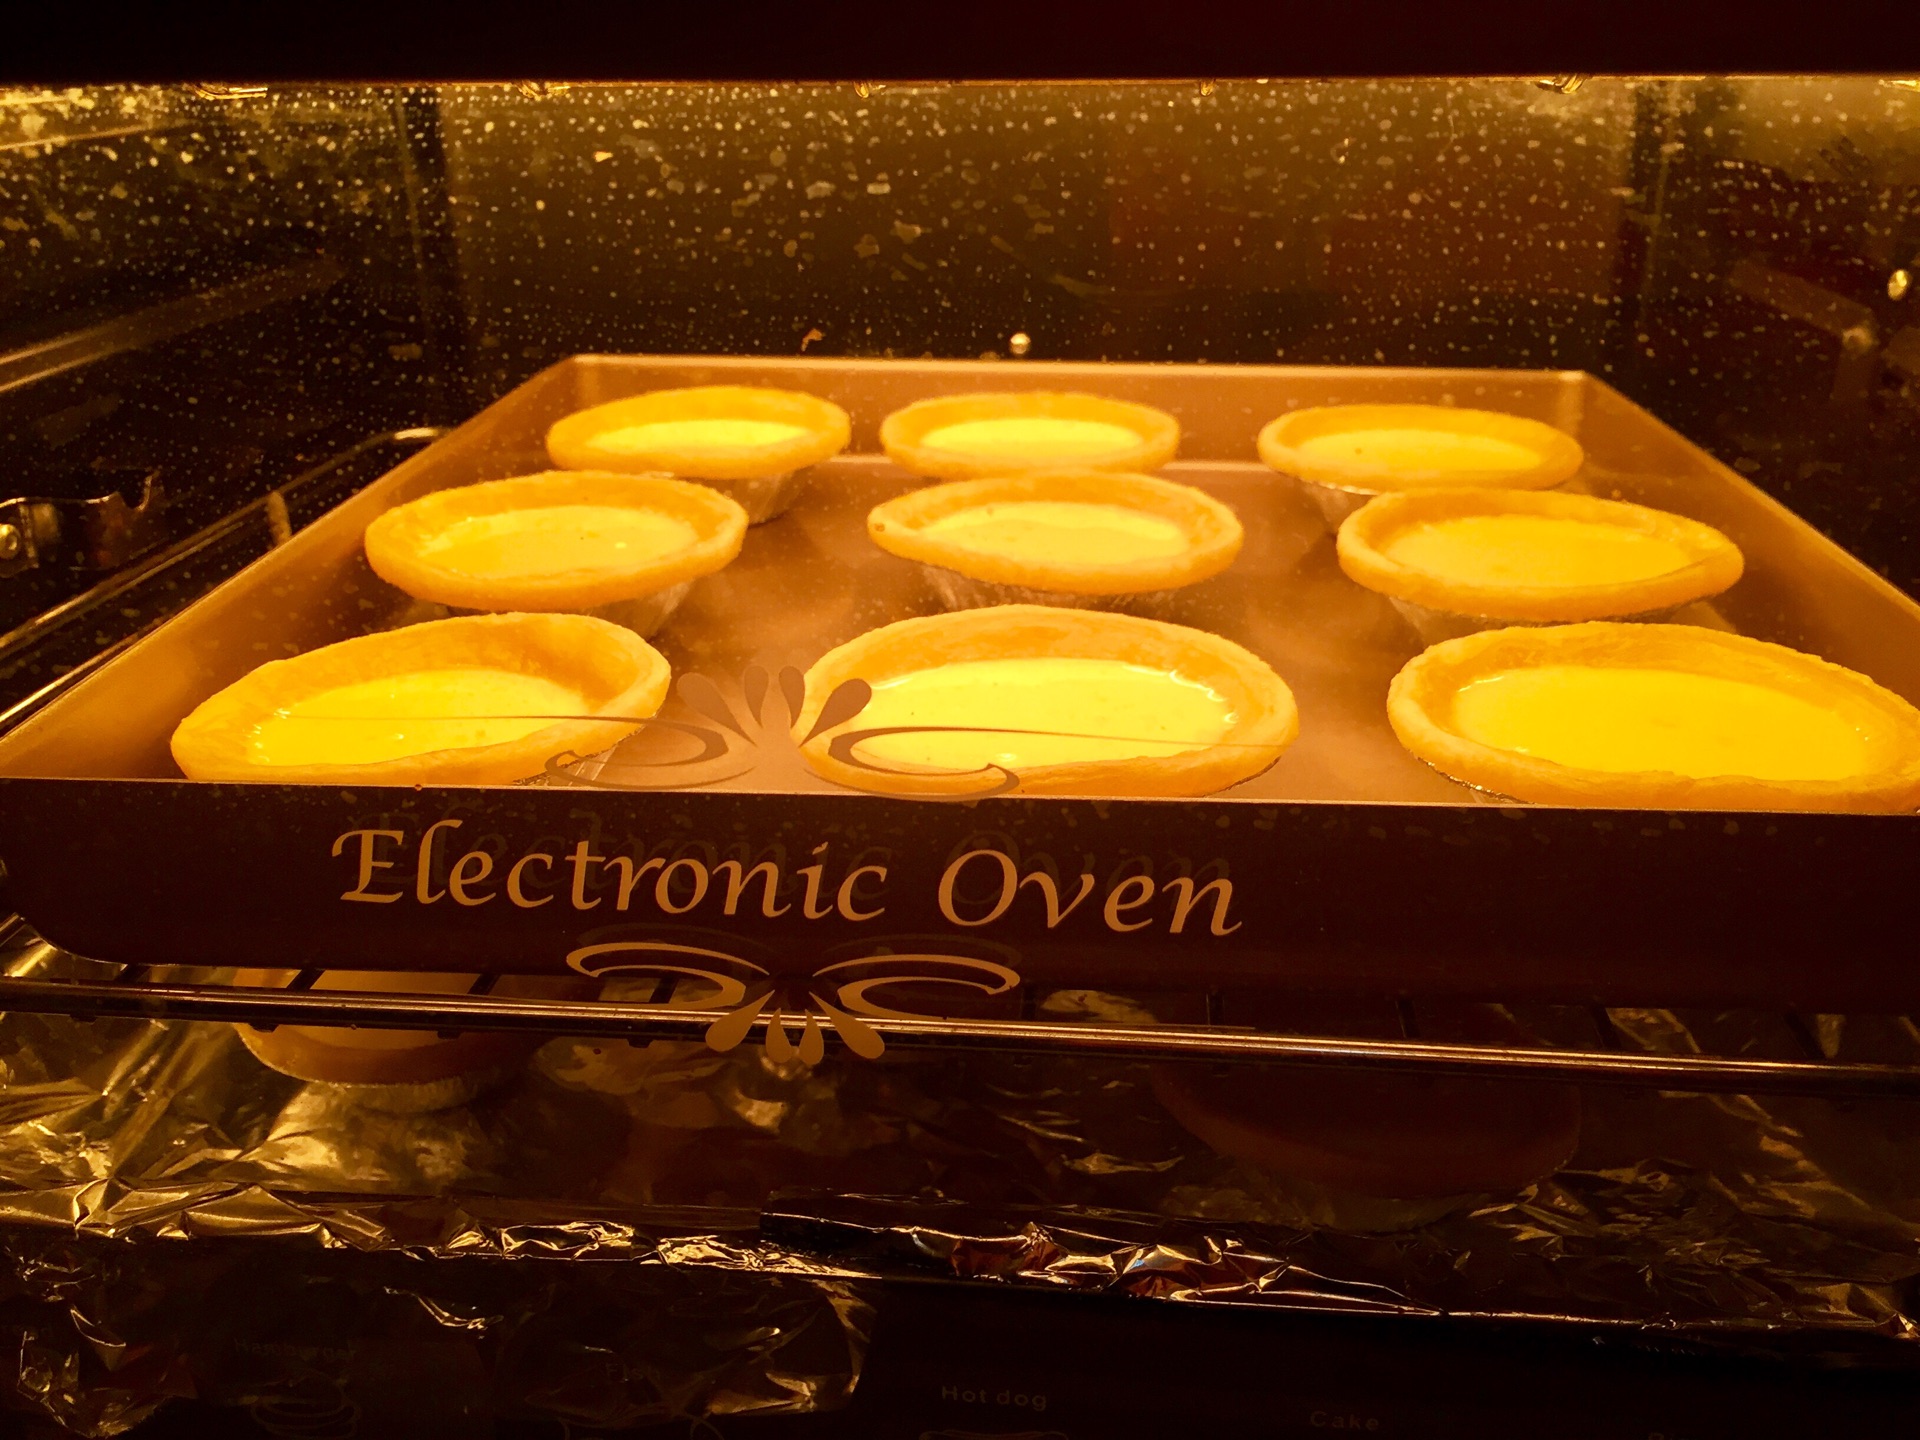 烤箱预热220°,蛋挞放中层,烤约20分钟.我的挞皮多,放了2层,注意控火